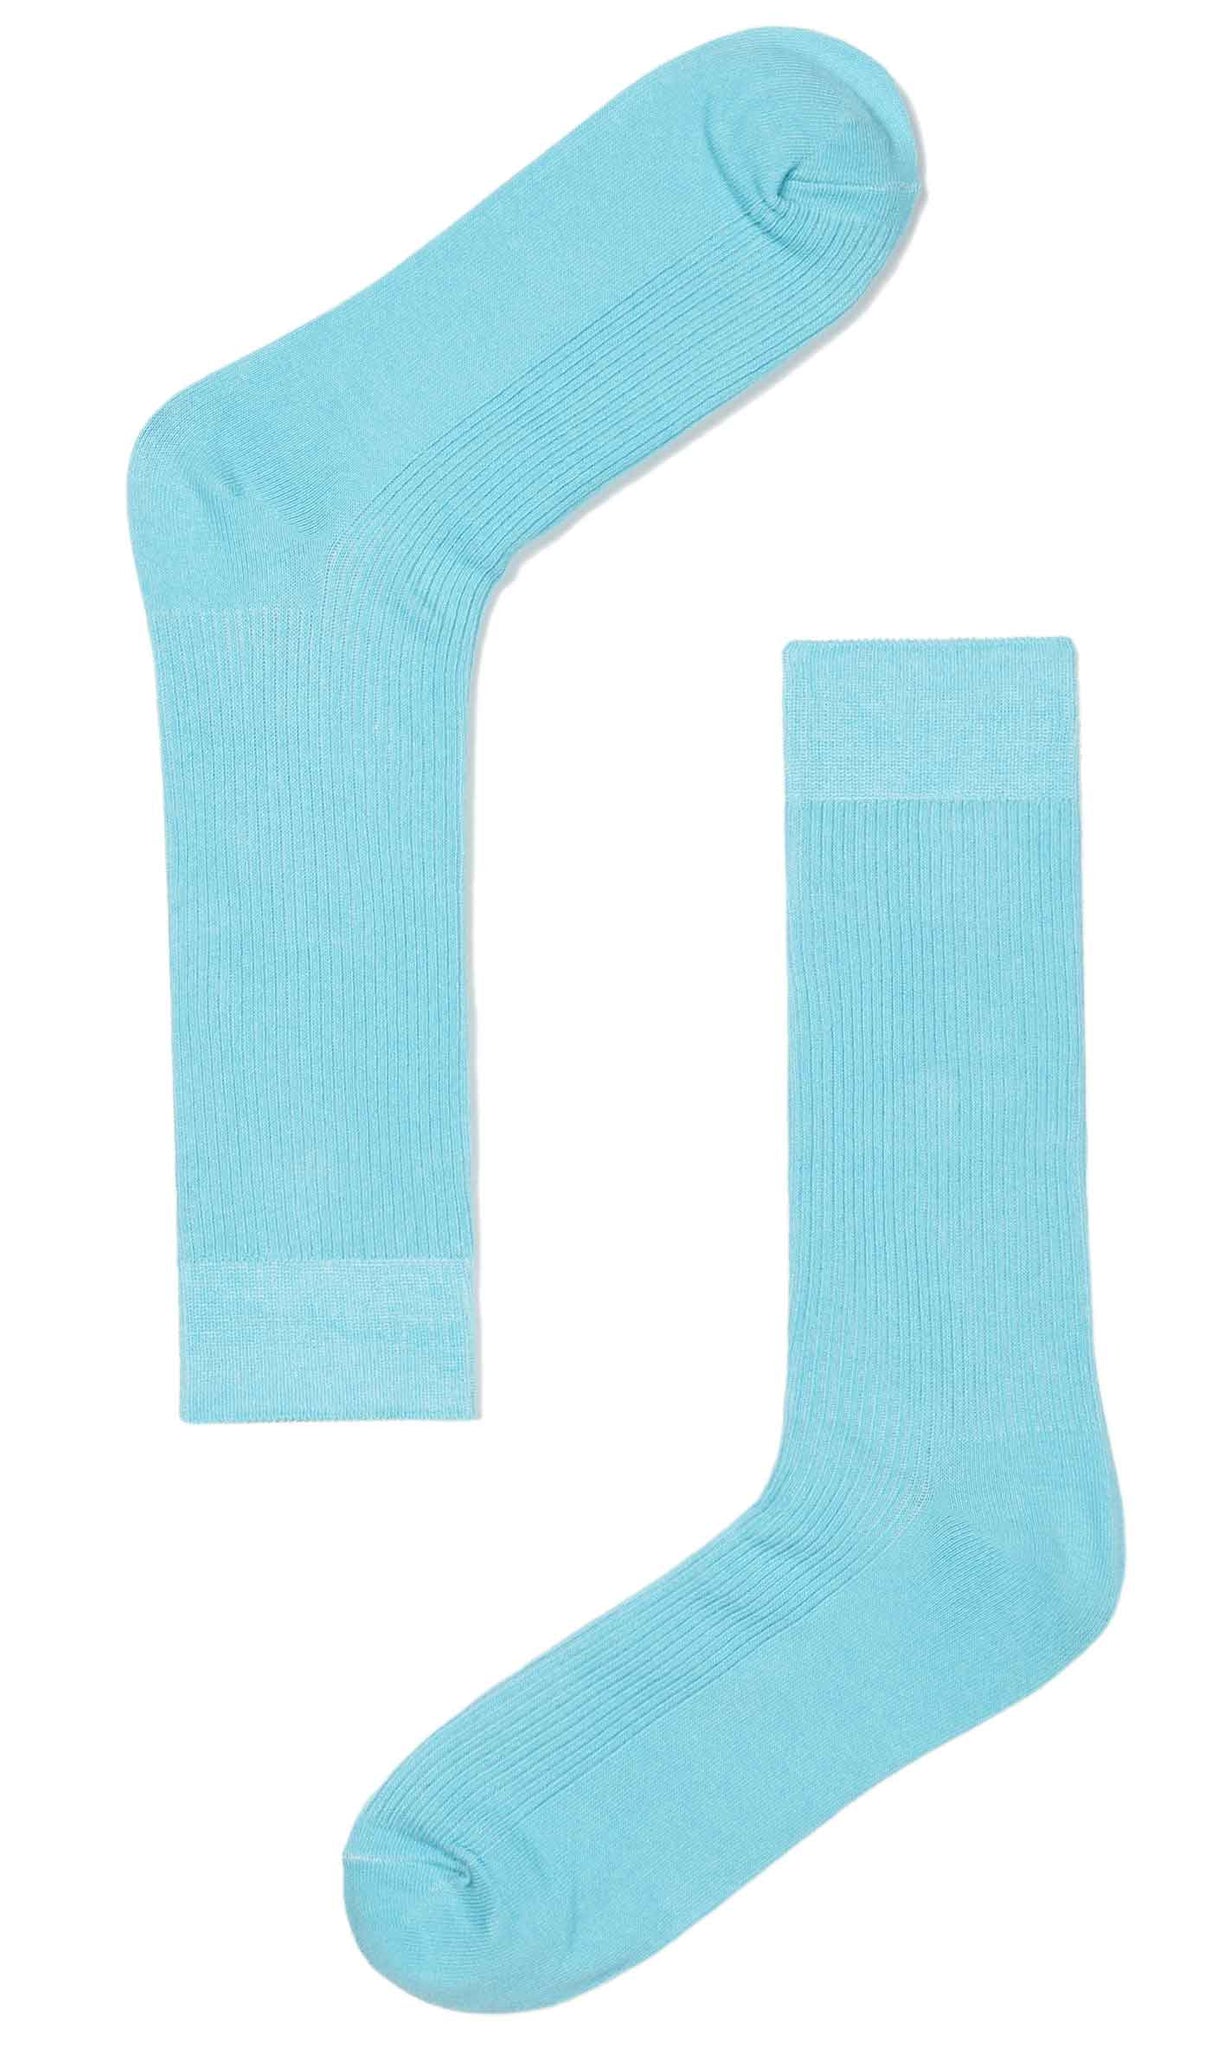 Light Blue Cotton-Blend Socks | Groomsmen Solid Color Men's Crew Socks ...